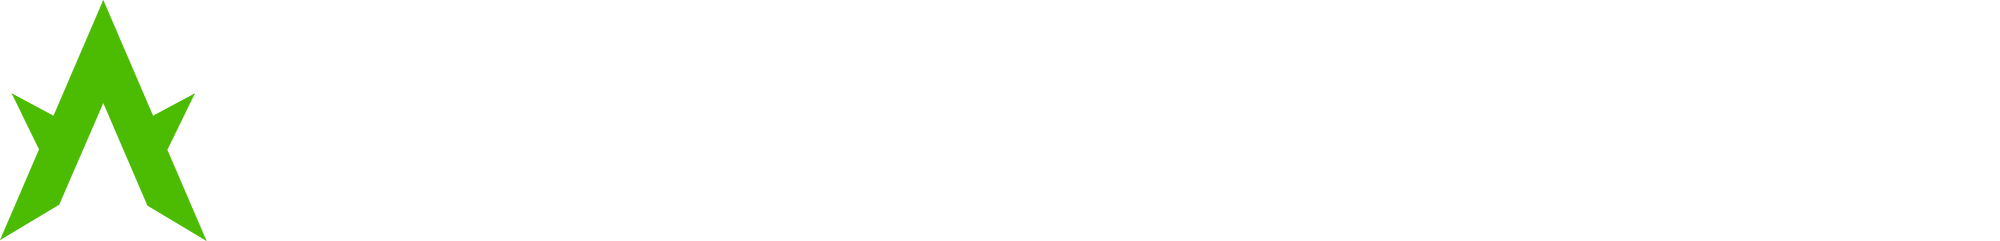 Alien-Kinetics-logo